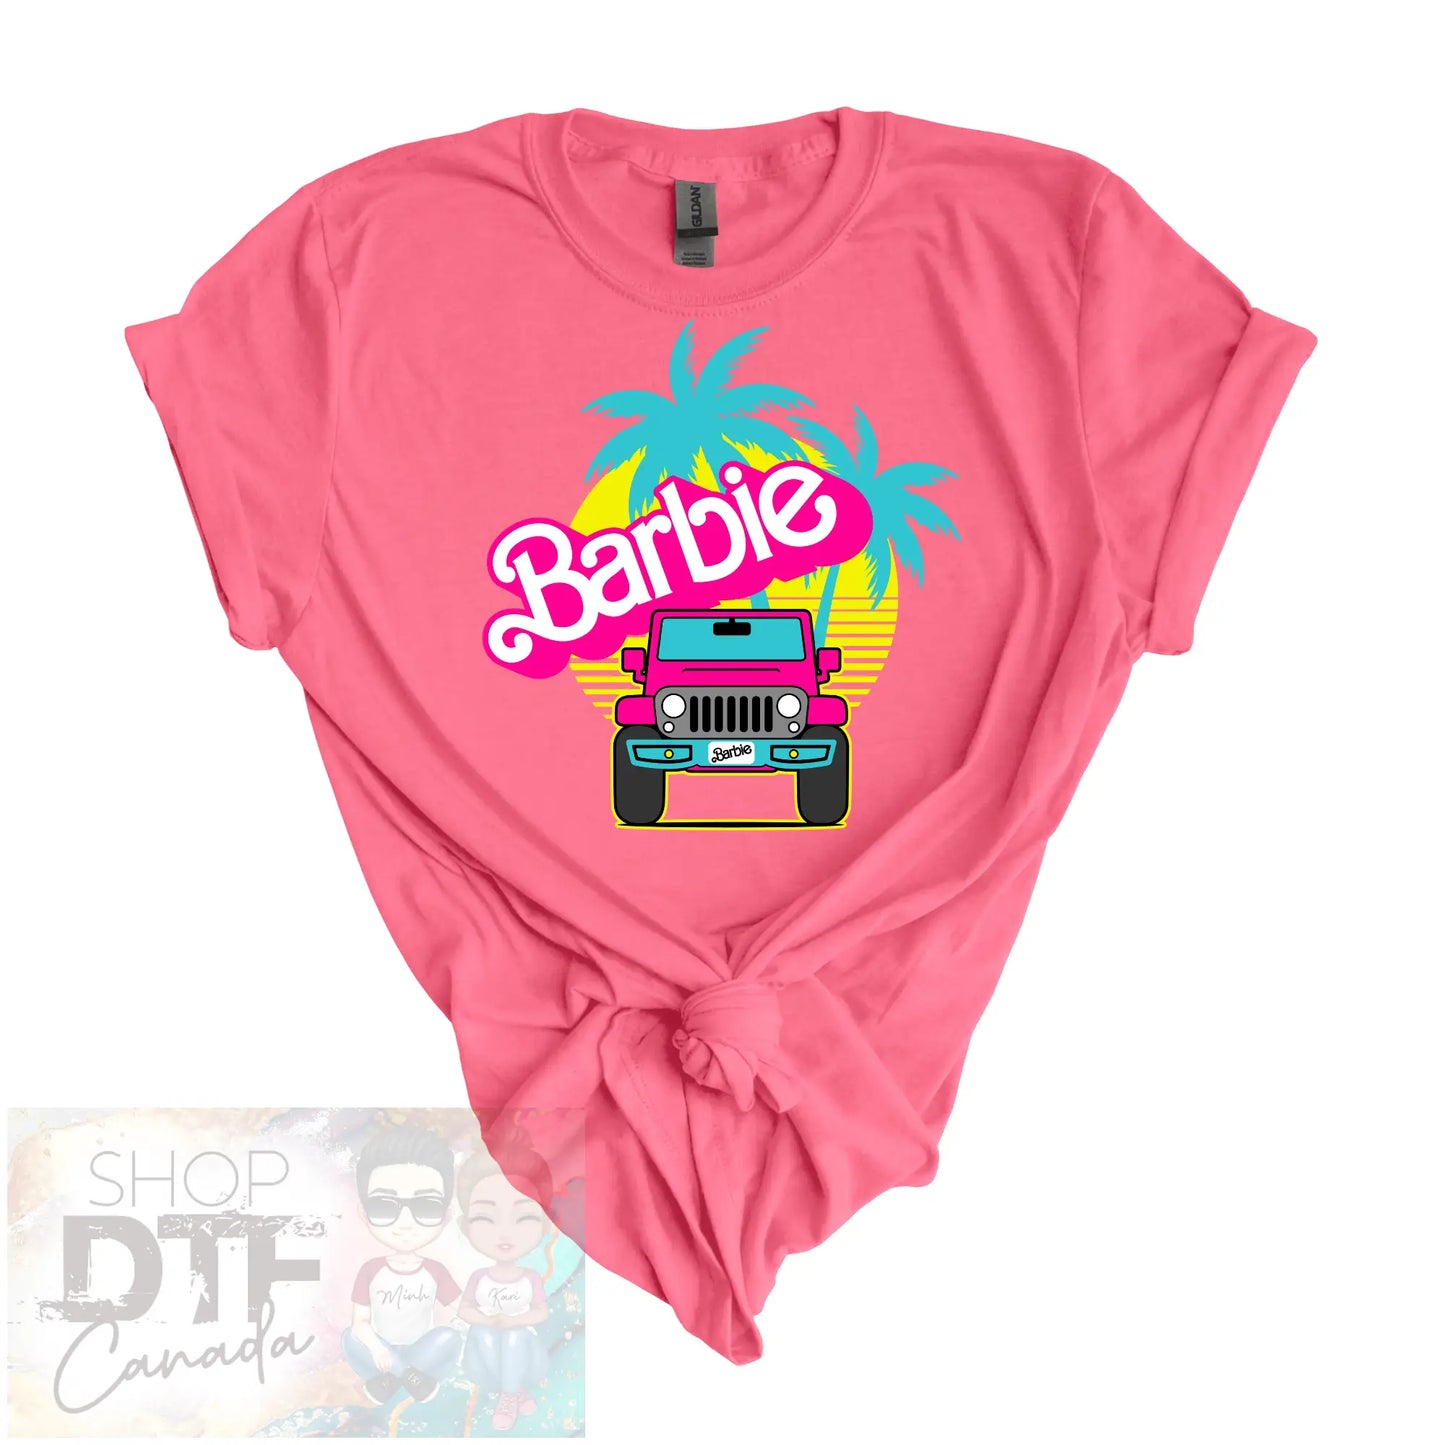 Barbie - Jeep - Shirts & Tops